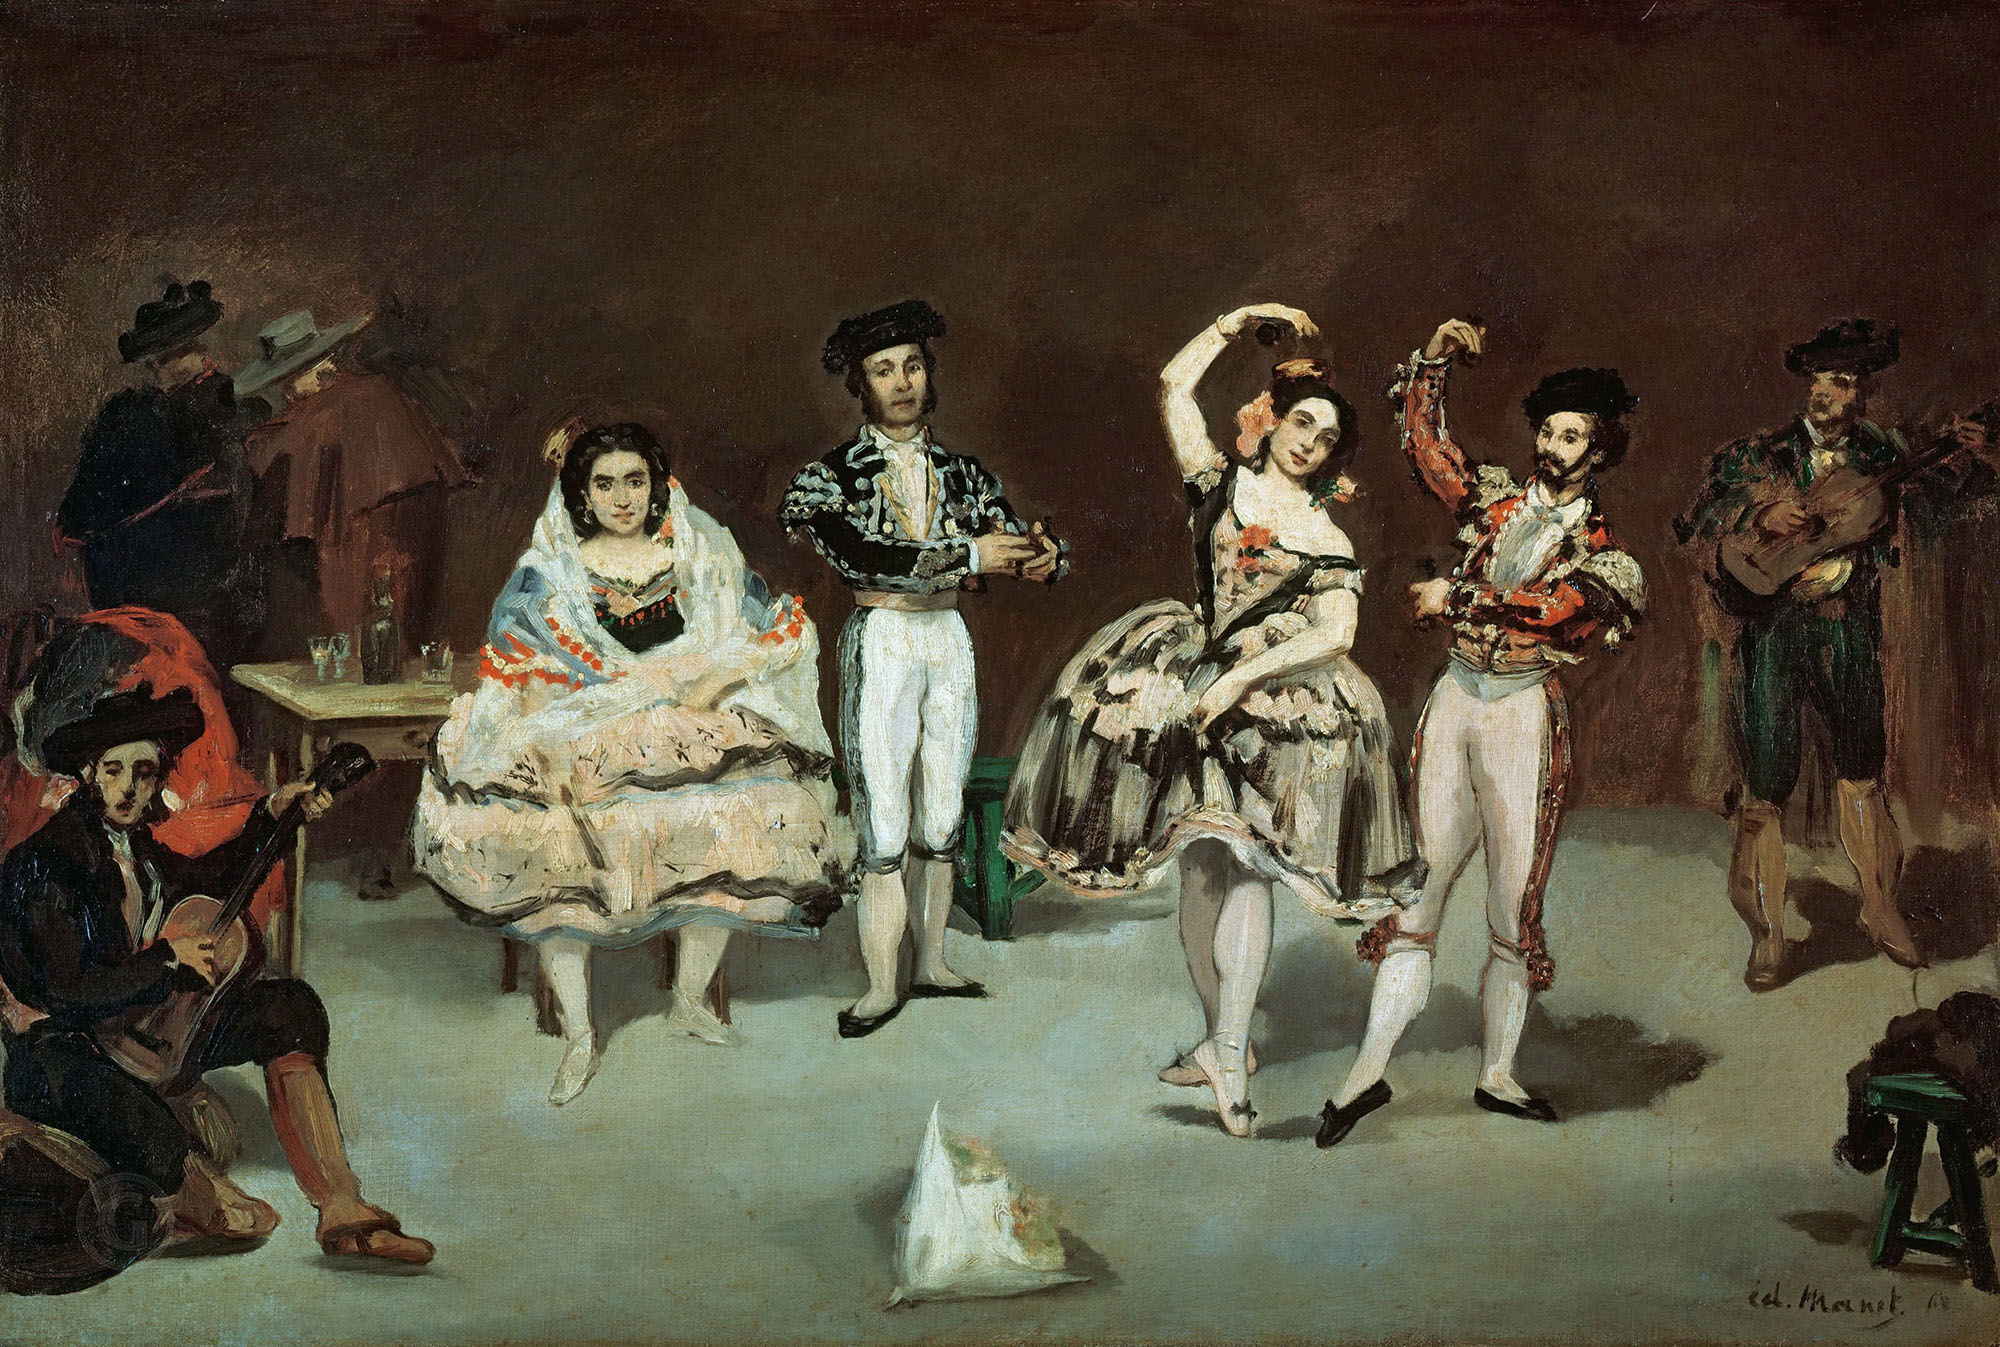 Эдуард Мане. "Испанский балет". 1862. Коллекция Филлипса, Вашингтон.